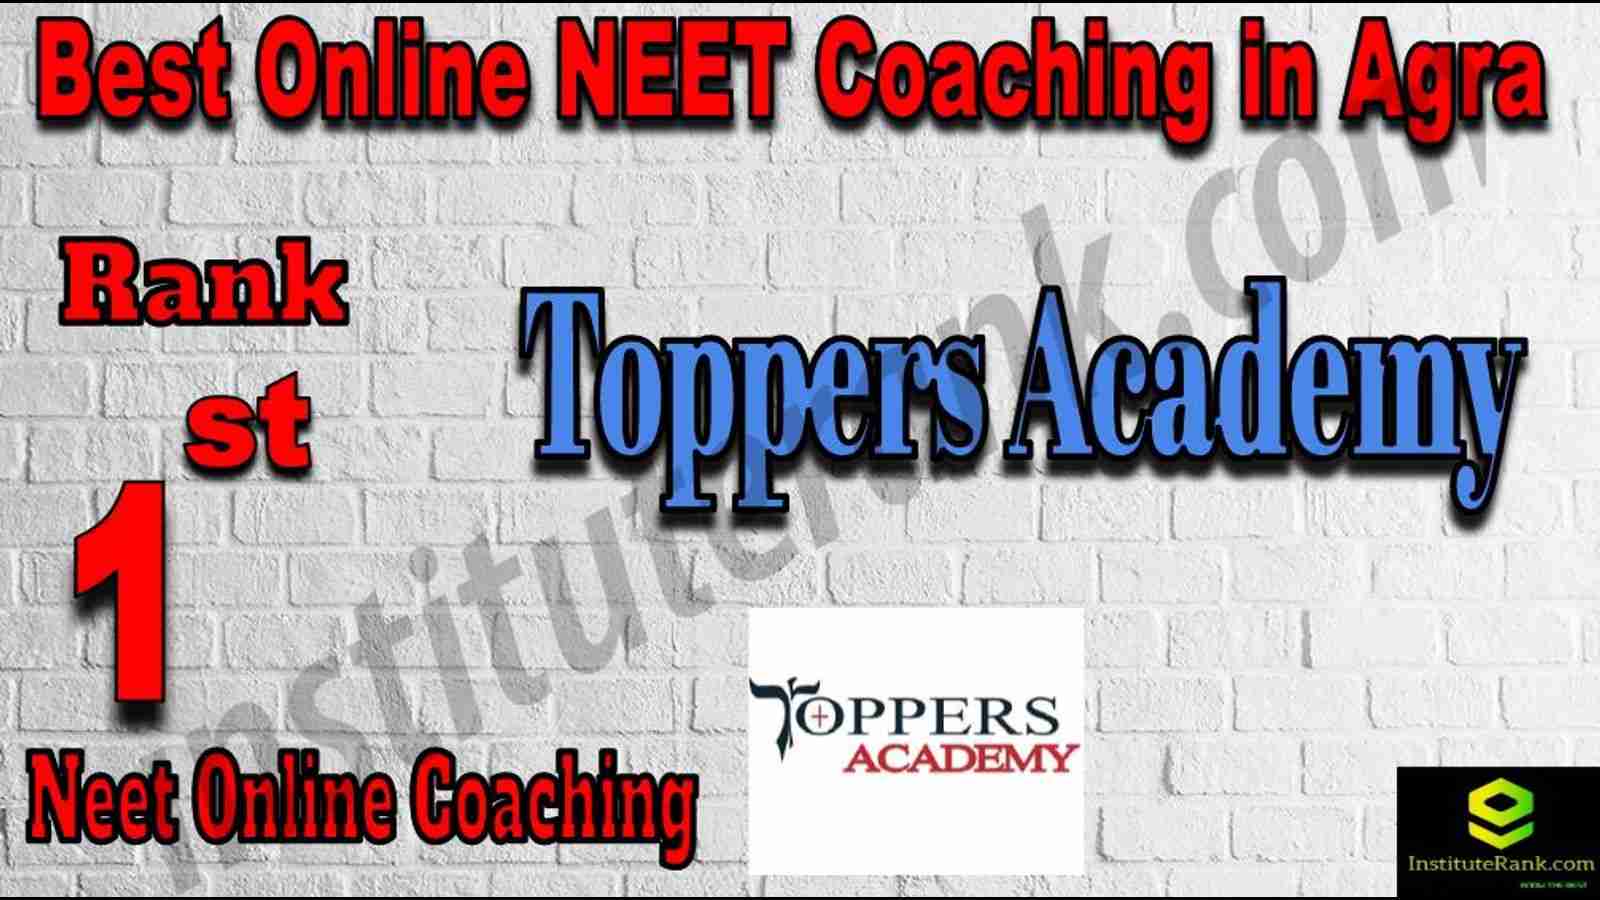 1st Best Online Neet Coaching in Agra